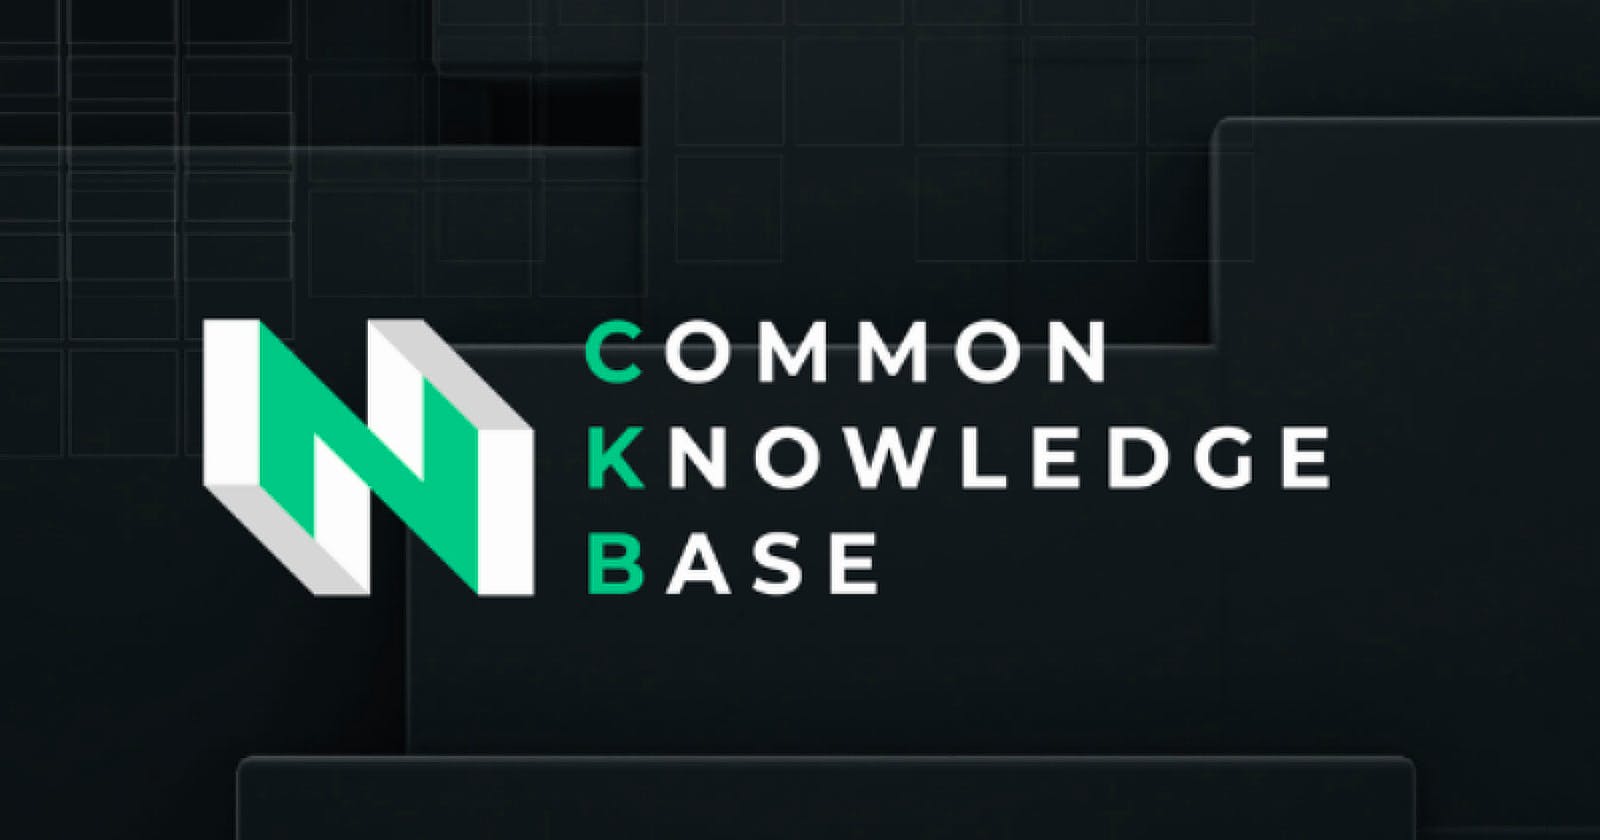 CKB Tokenomics - A Different Model